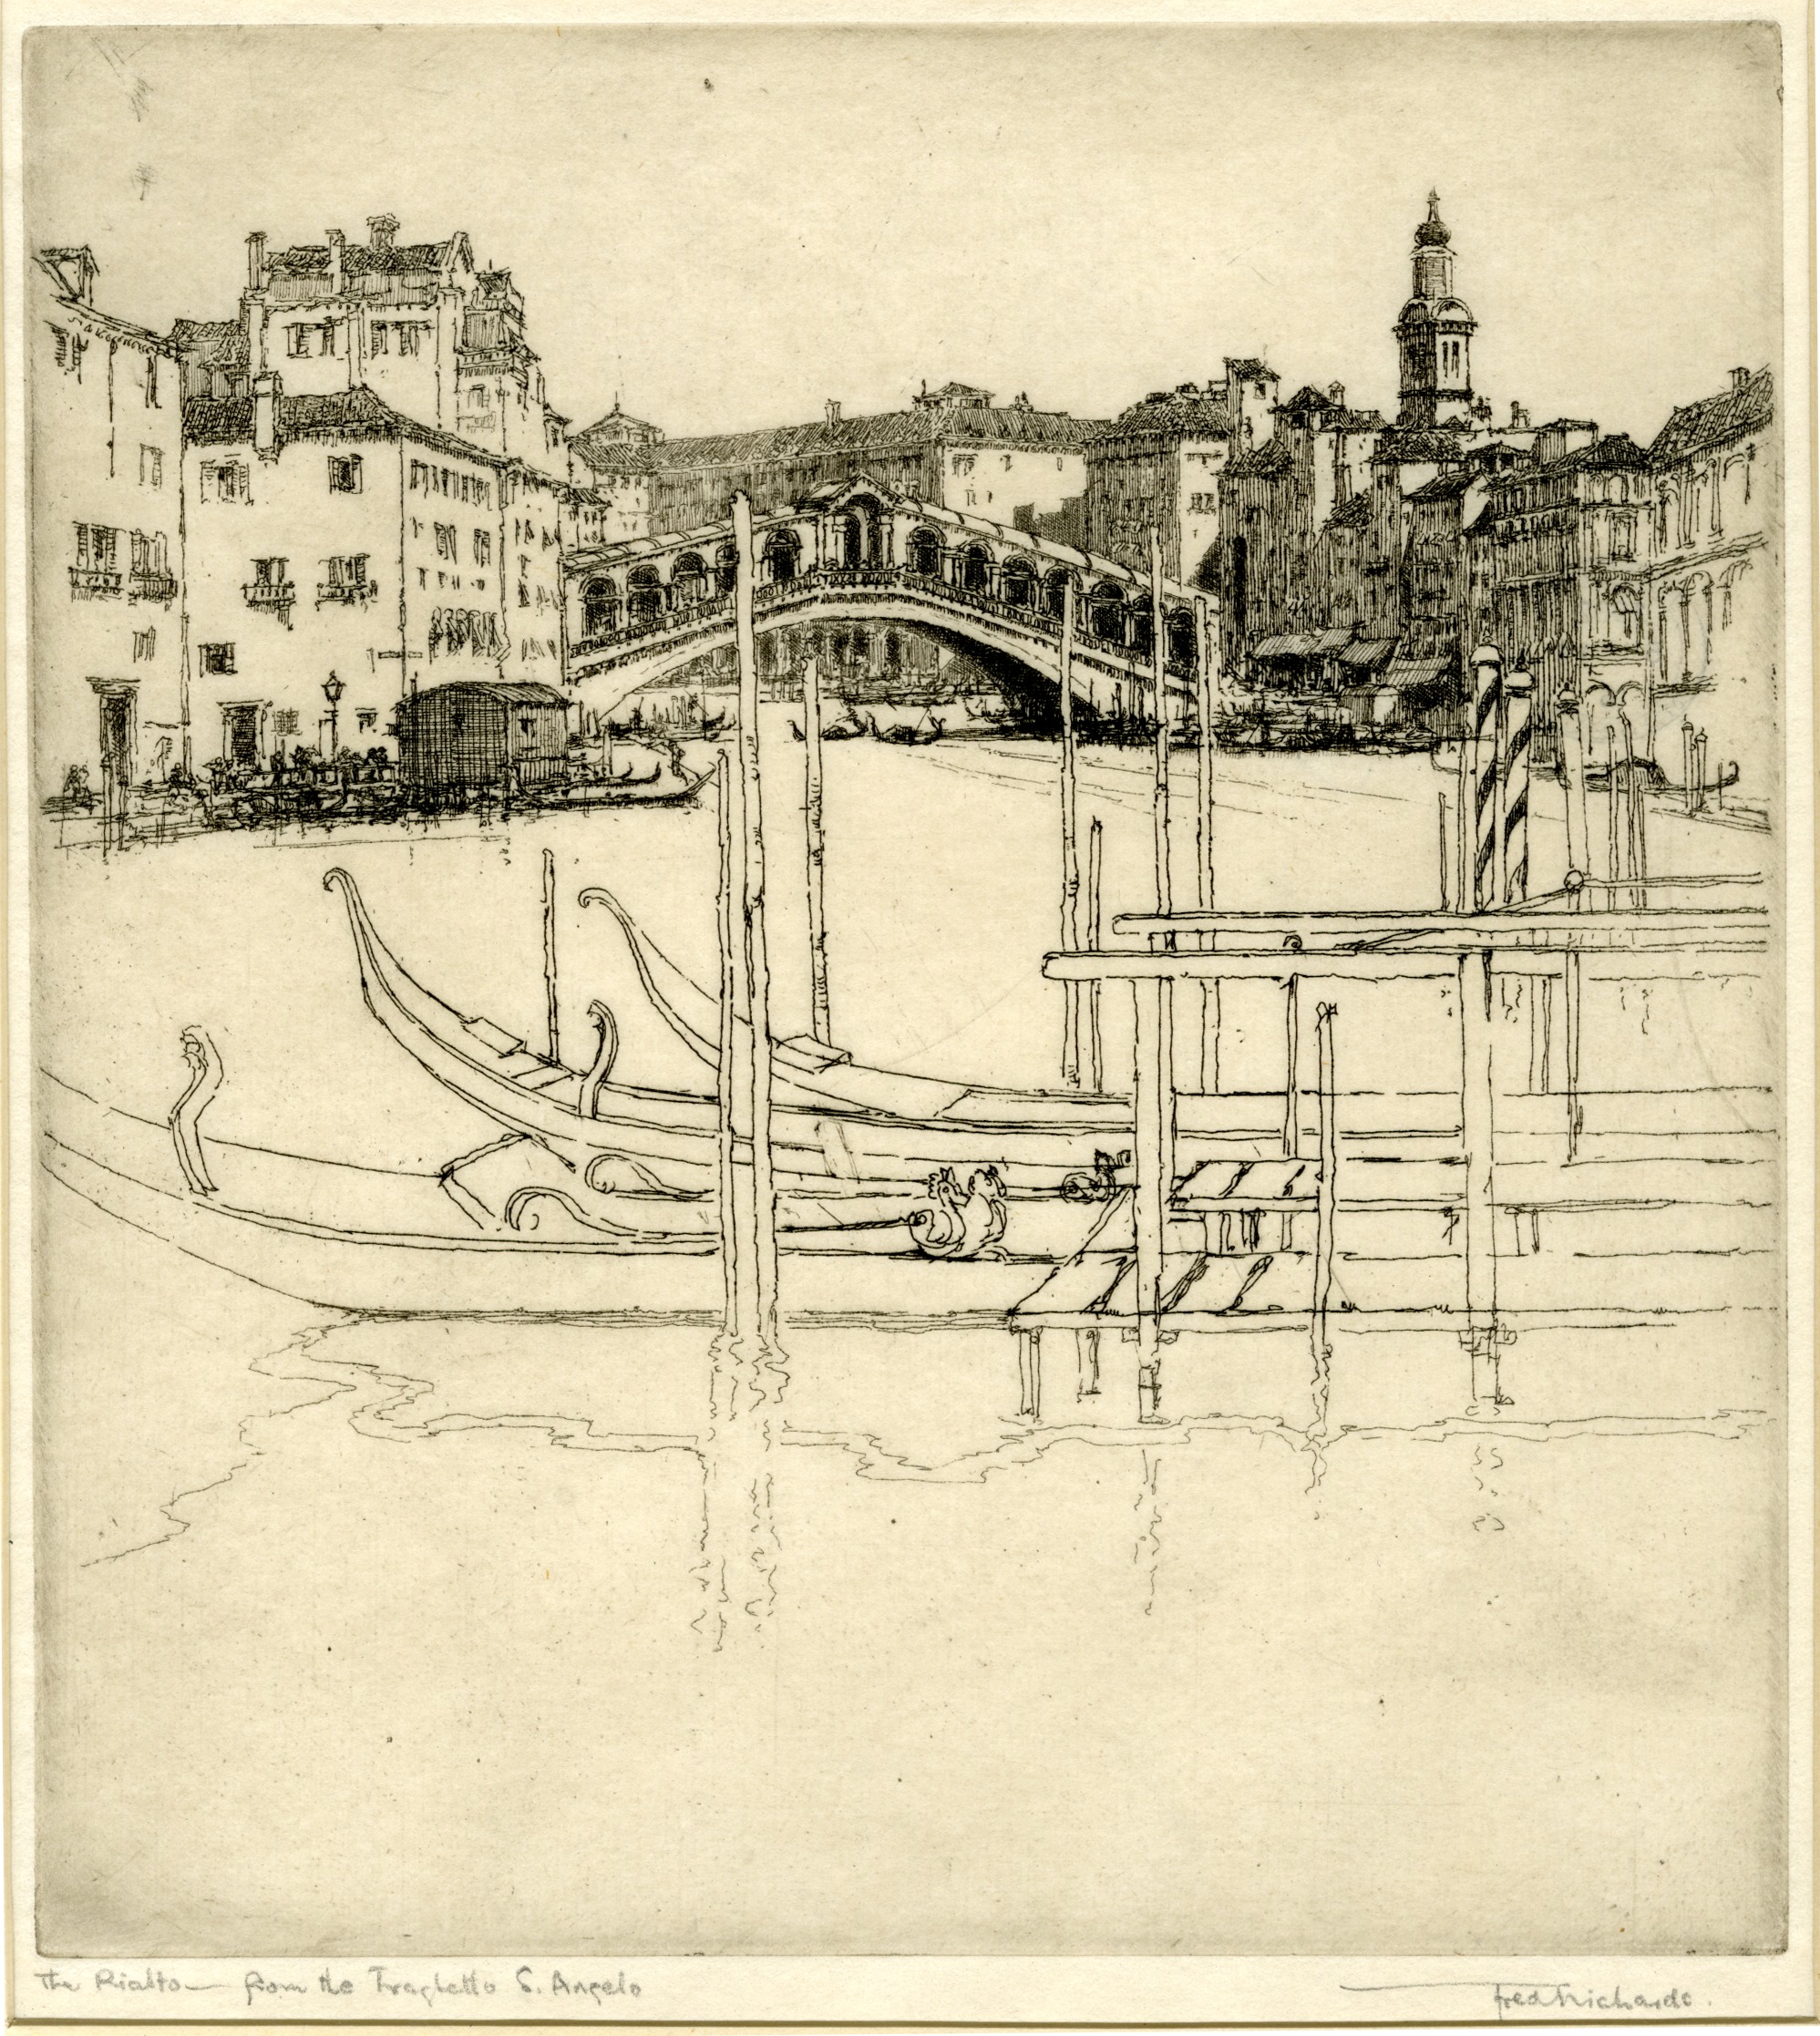 The Rialto from the Traghetto, S Angelo (circa 1925)